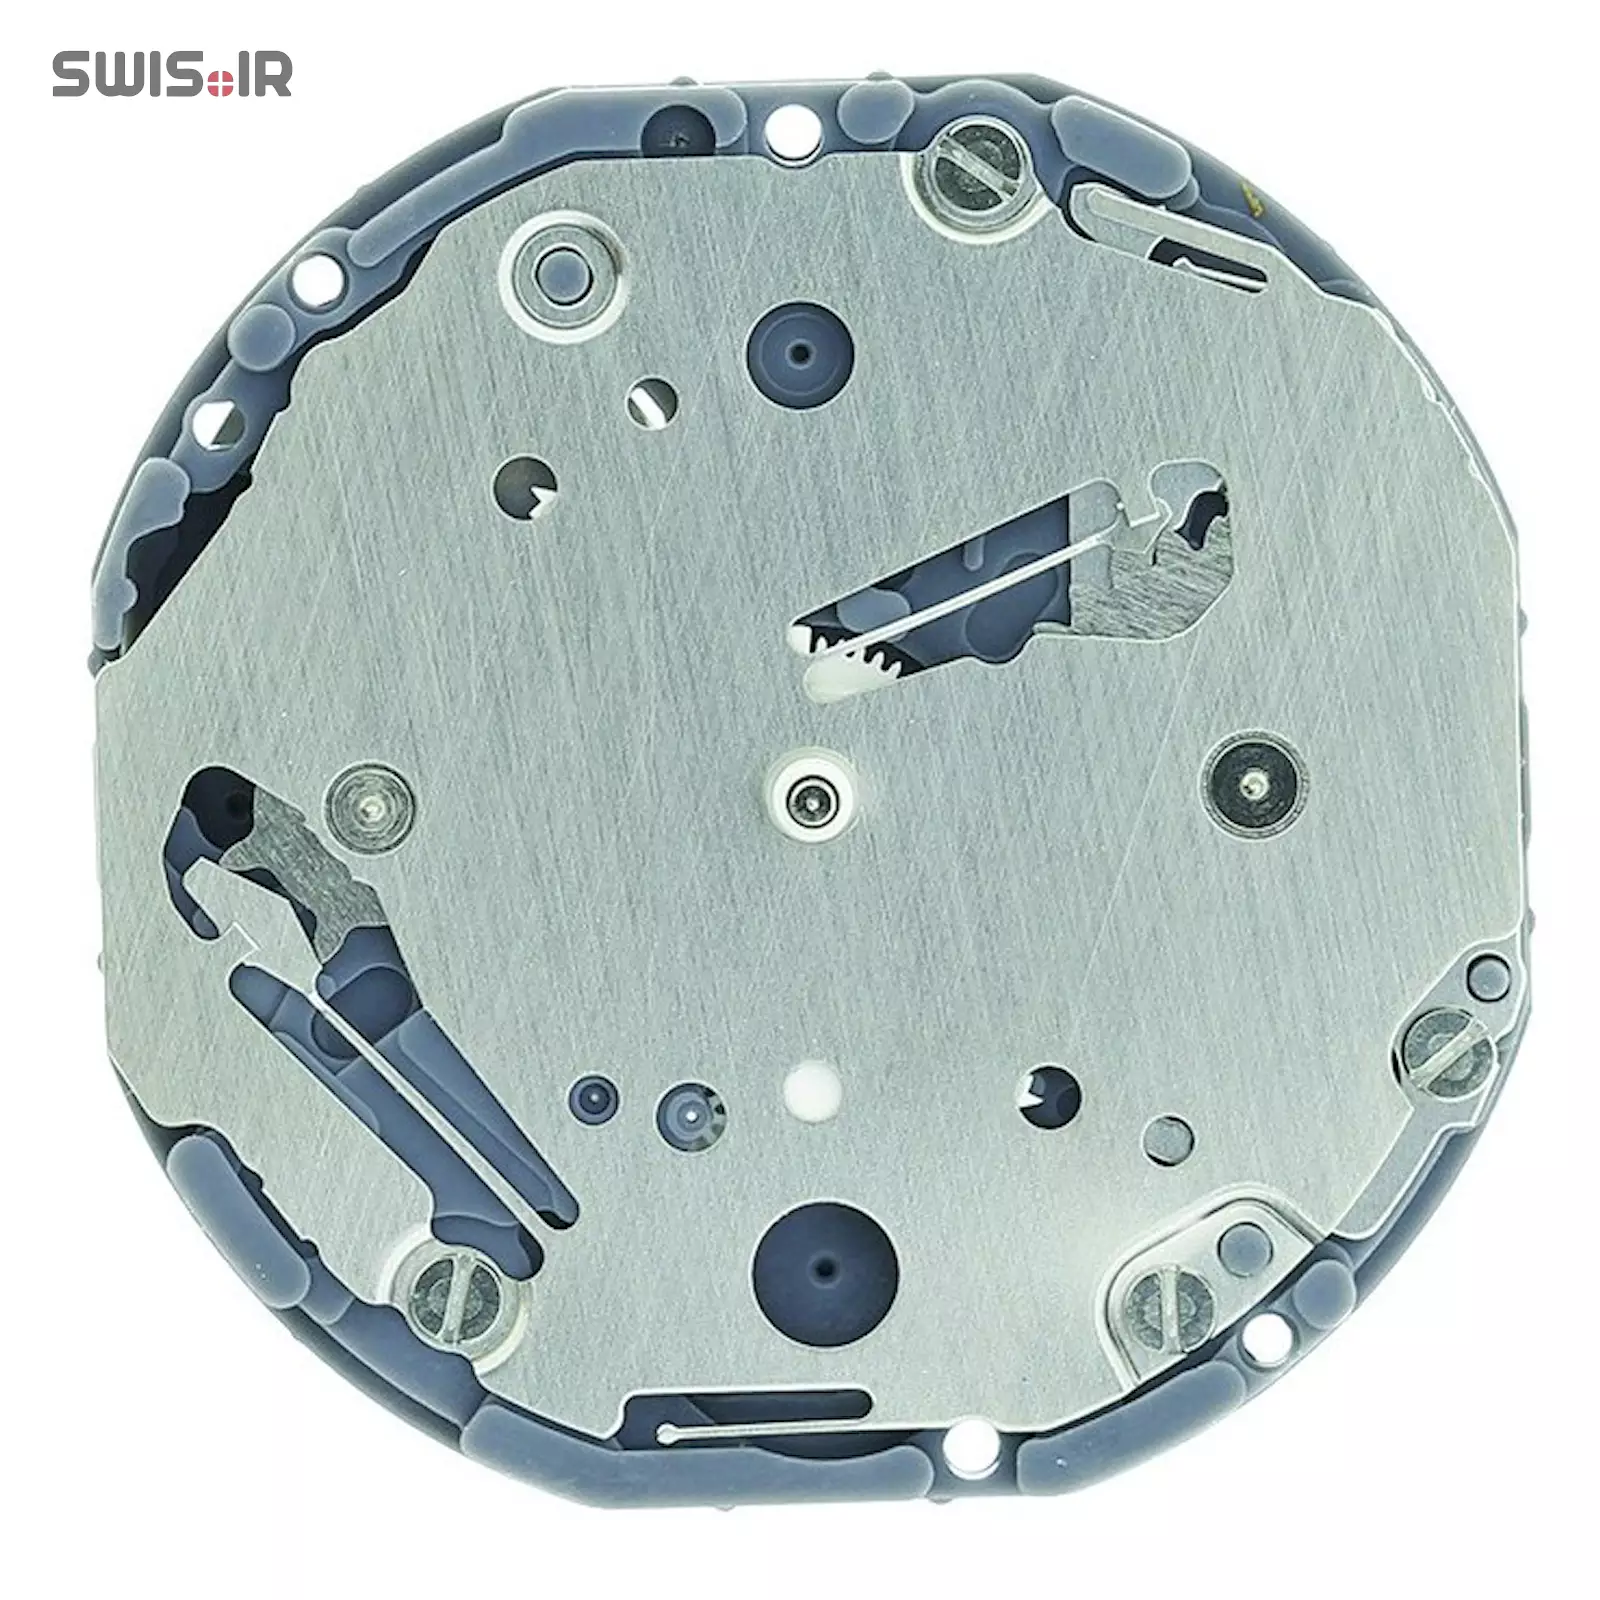 تصویر روی موتور ساعت کالیبر VD79A-SII ساخت شرکت سیکو ـ اپسون ژاپن